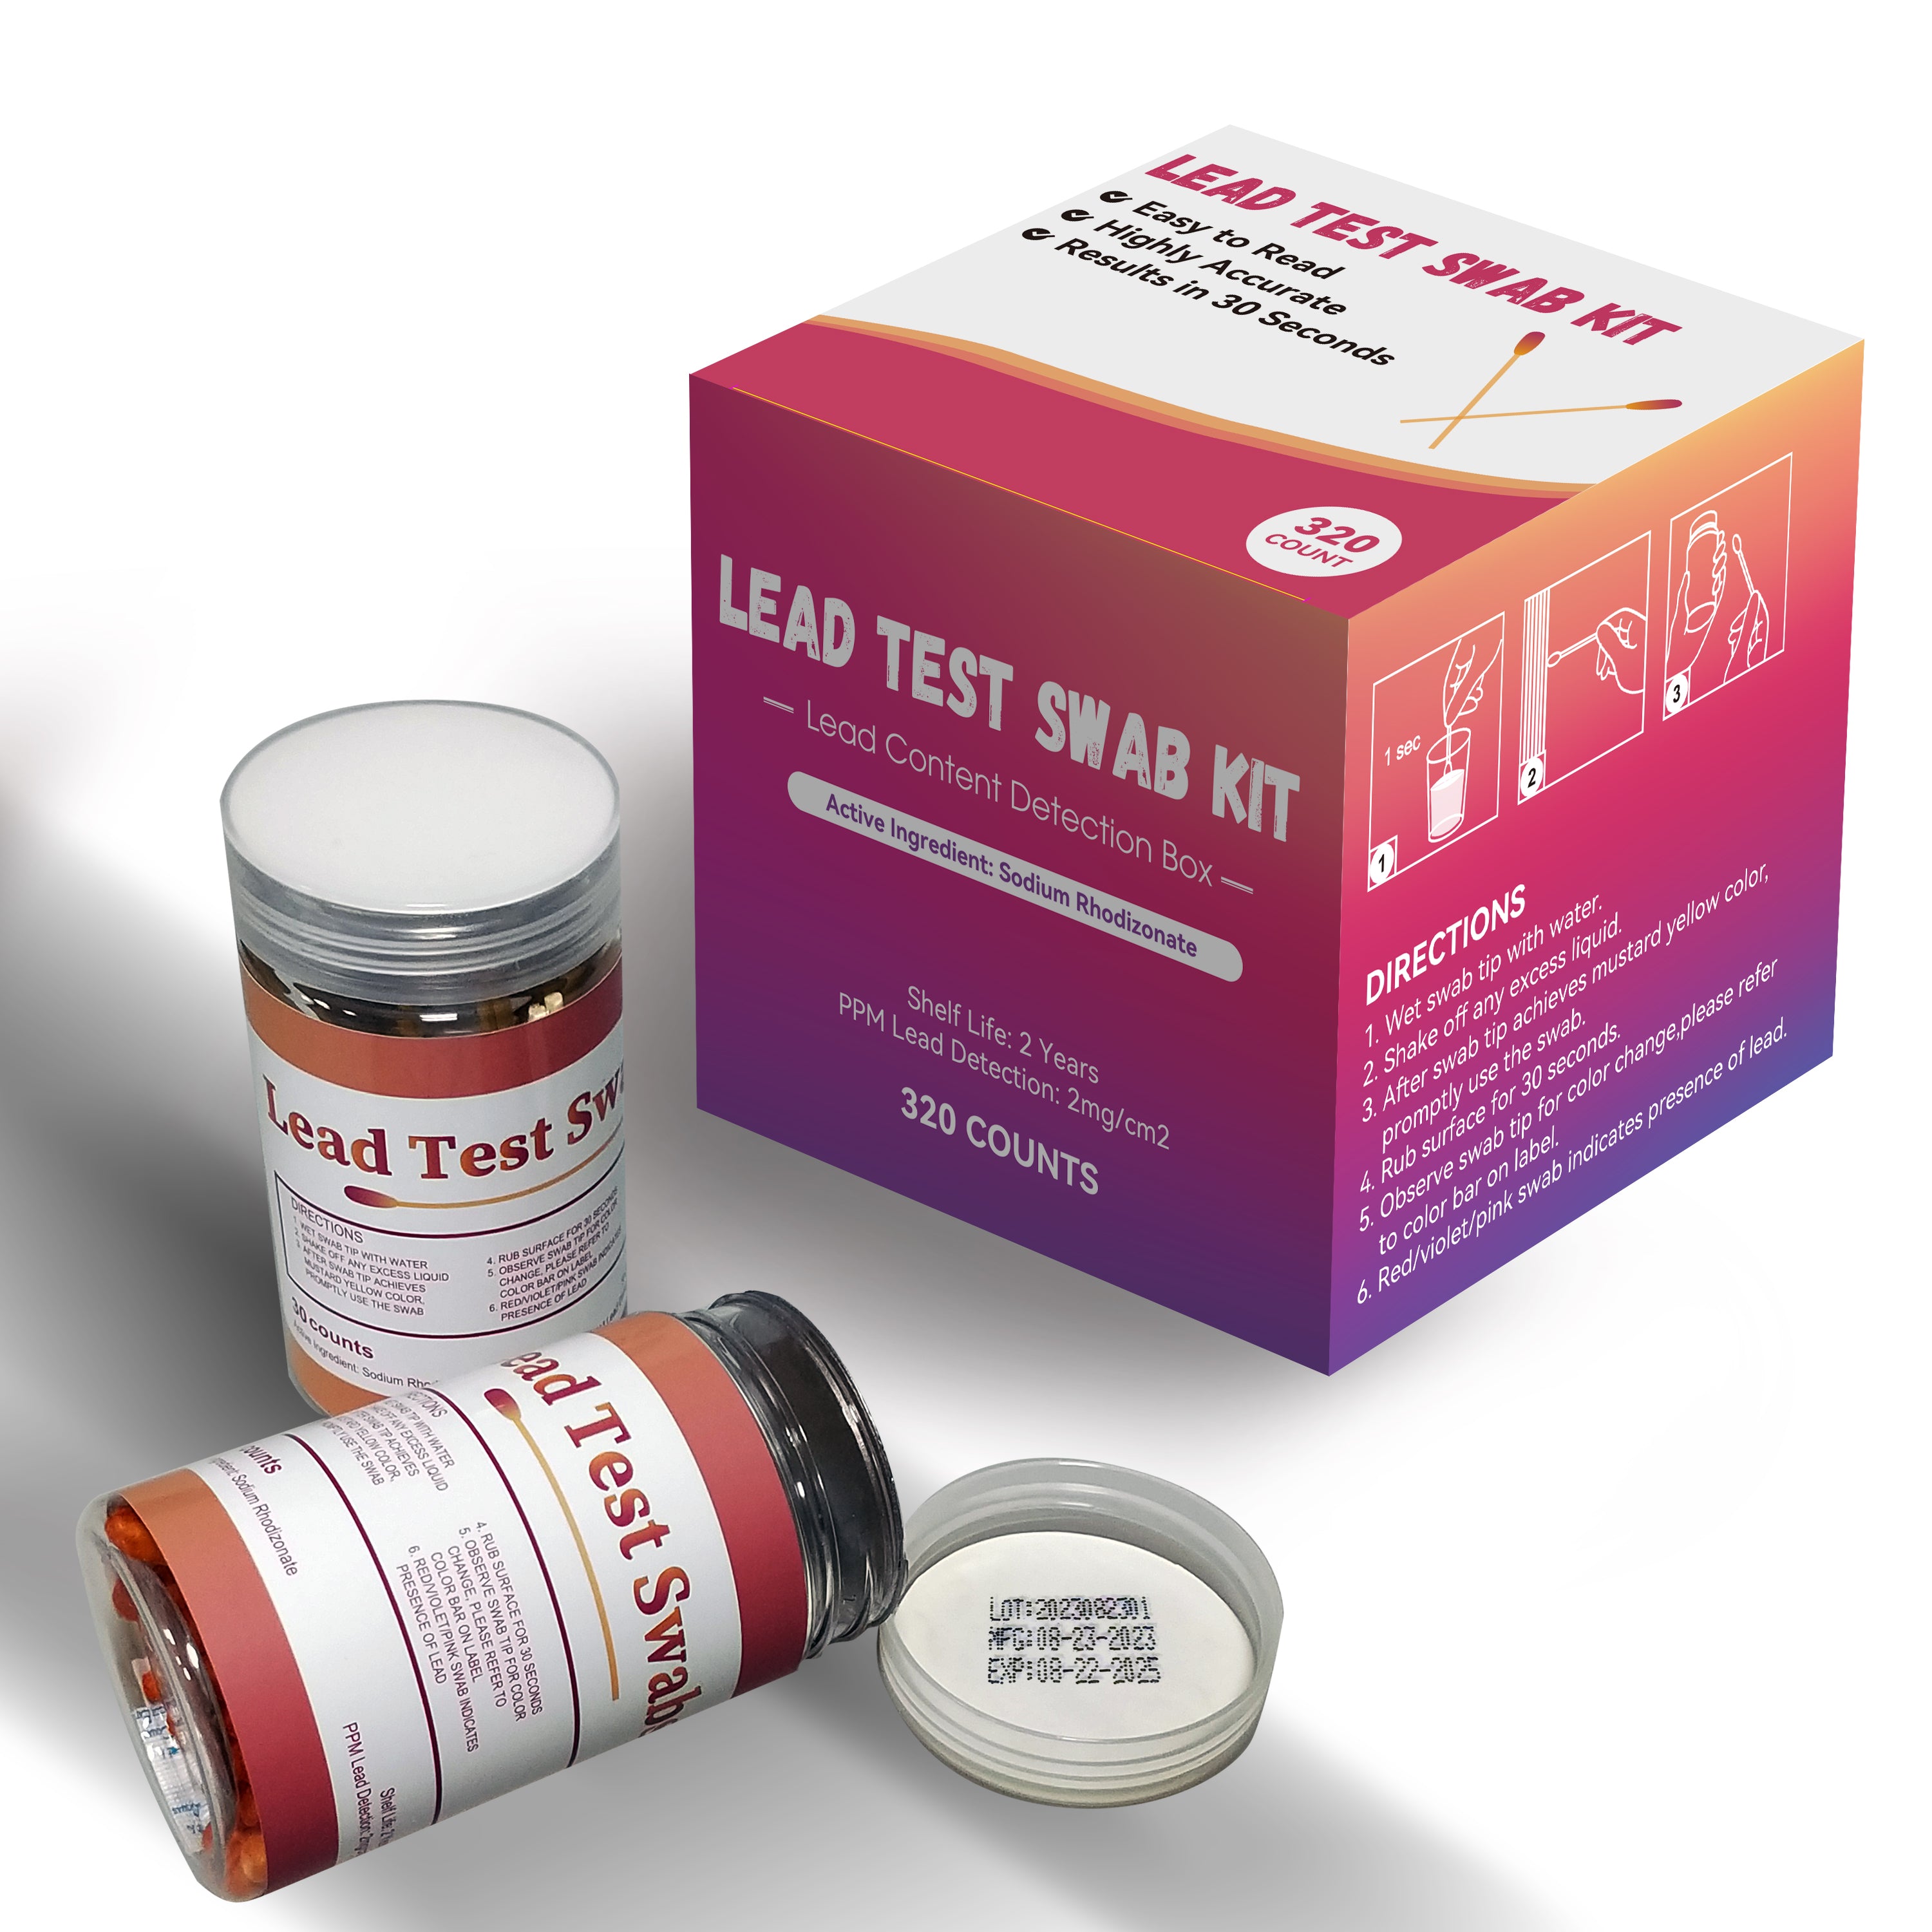 Instant Lead Test Swab Kit (80X4=320 Pcs Rapid Home Testing Swabs) 30